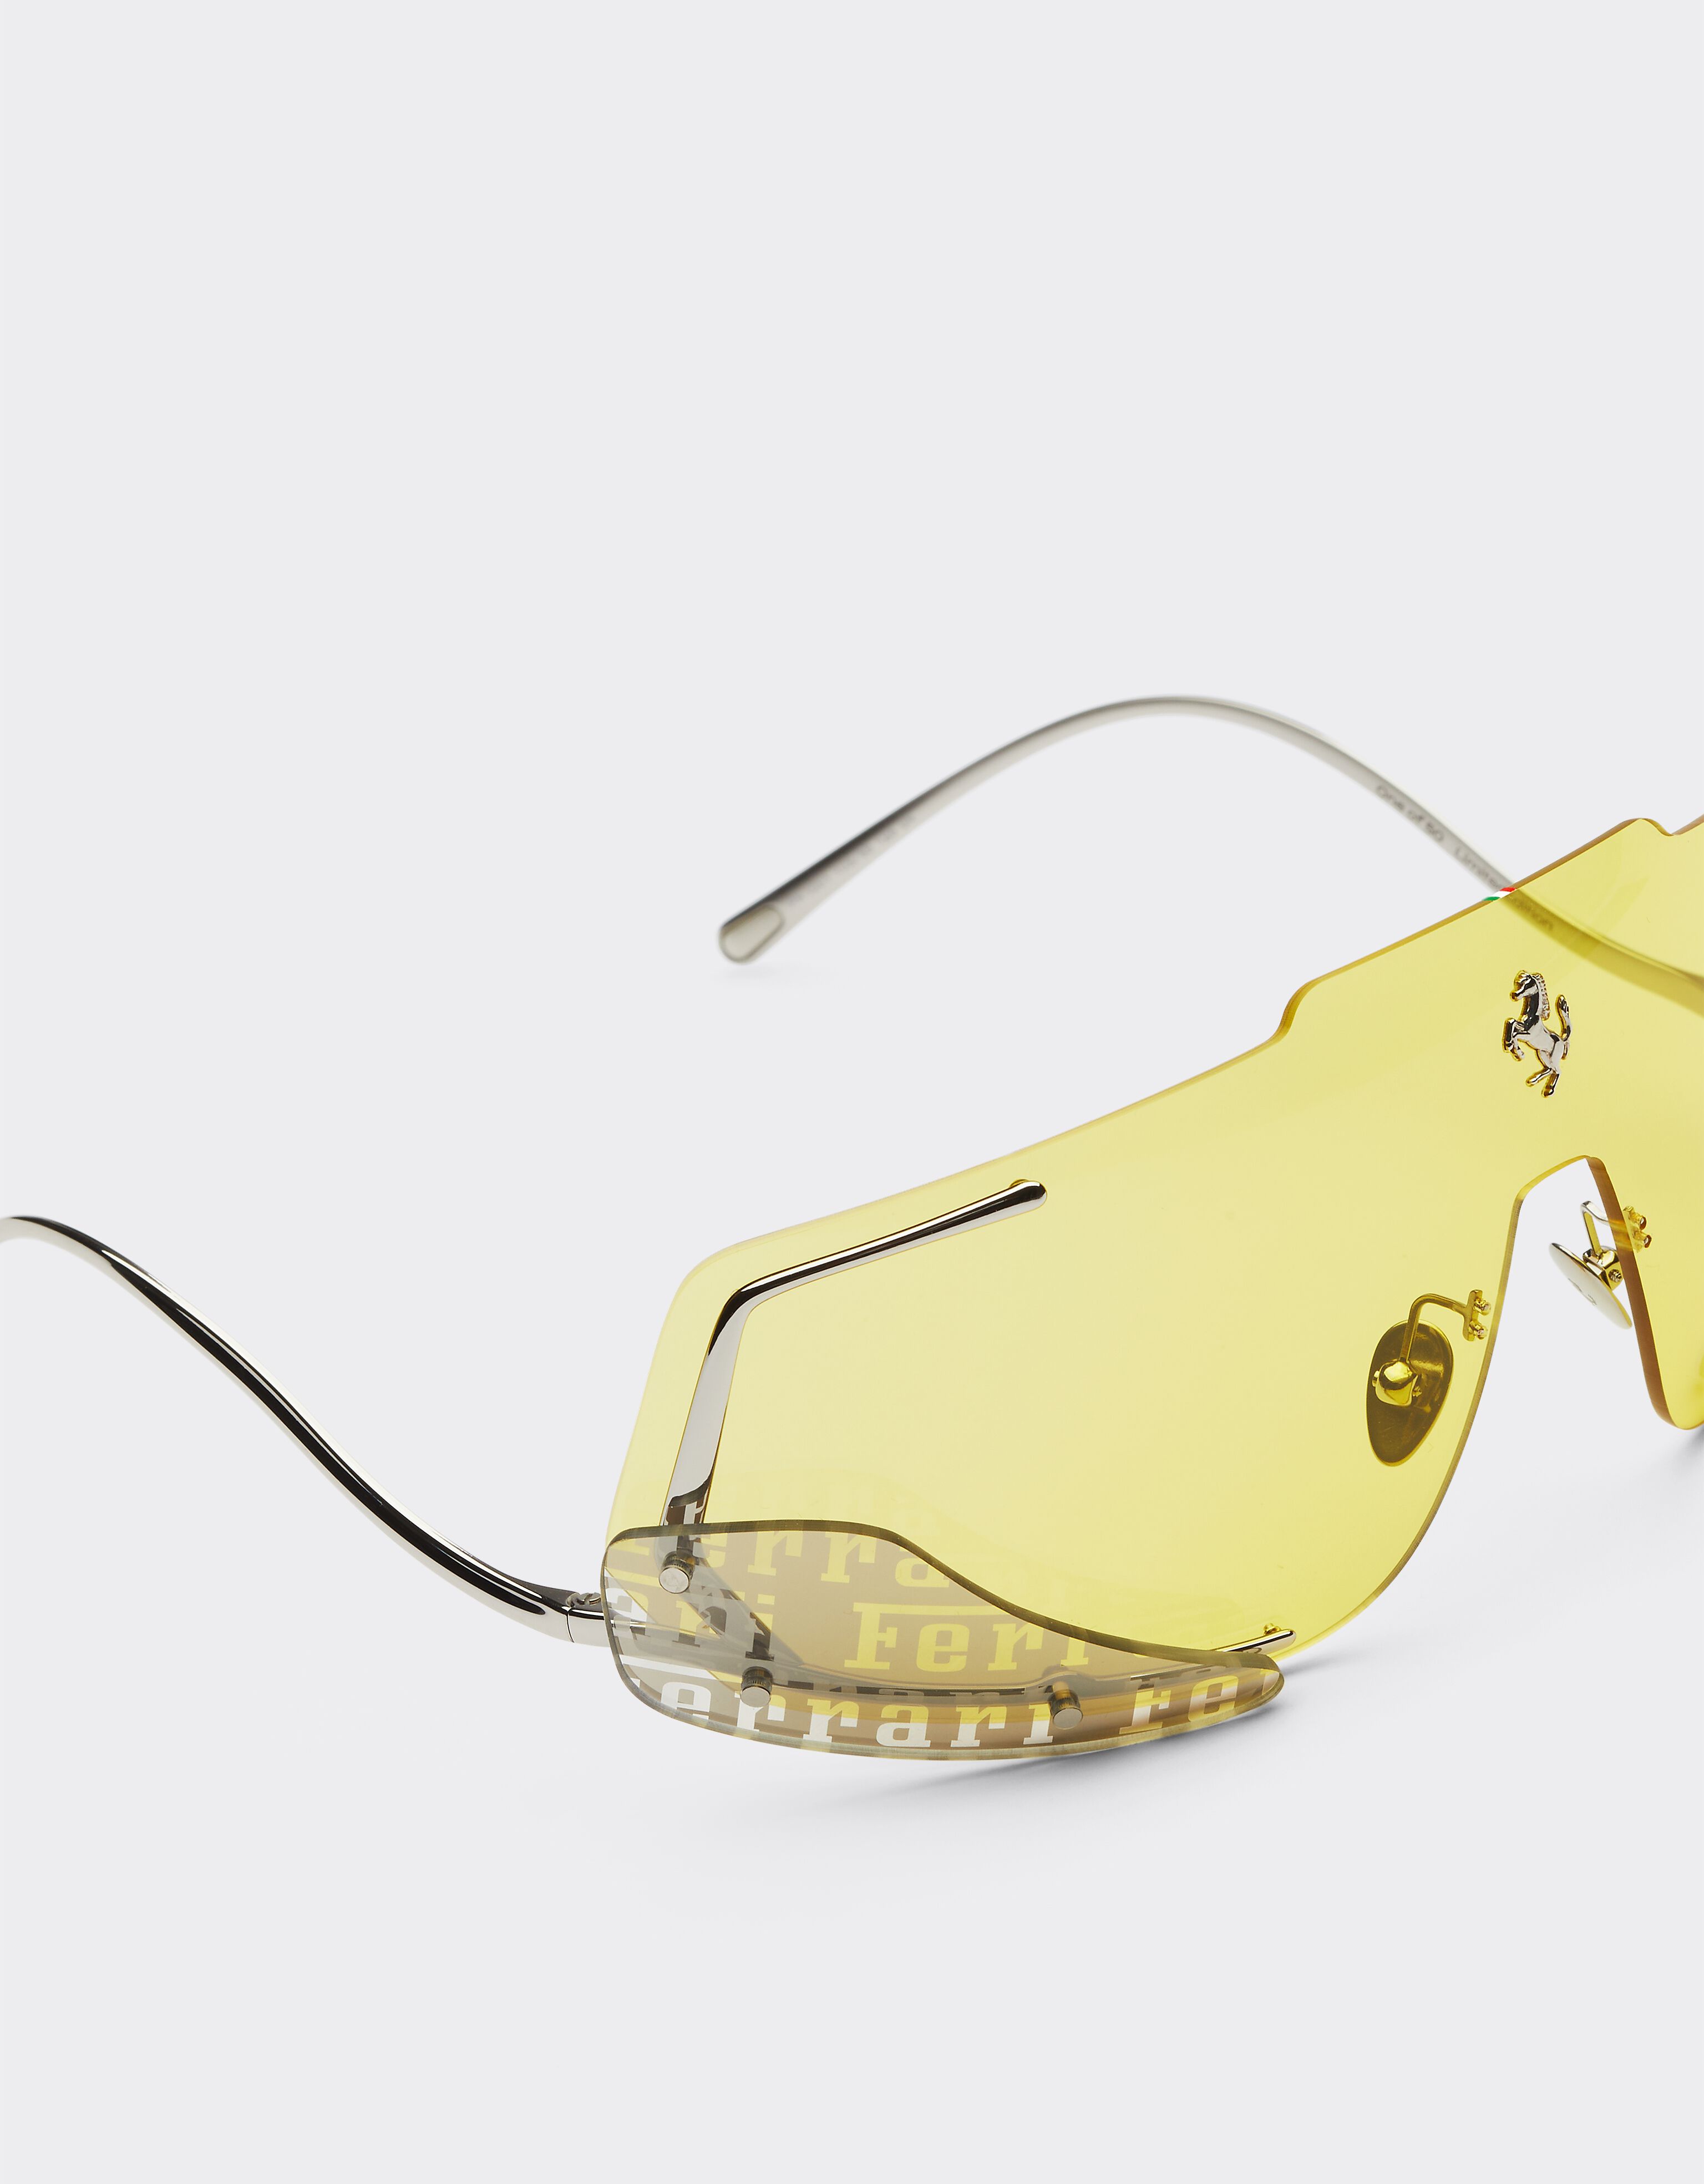 Ferrari 法拉利黄色镜片太阳镜 银色 F0406f